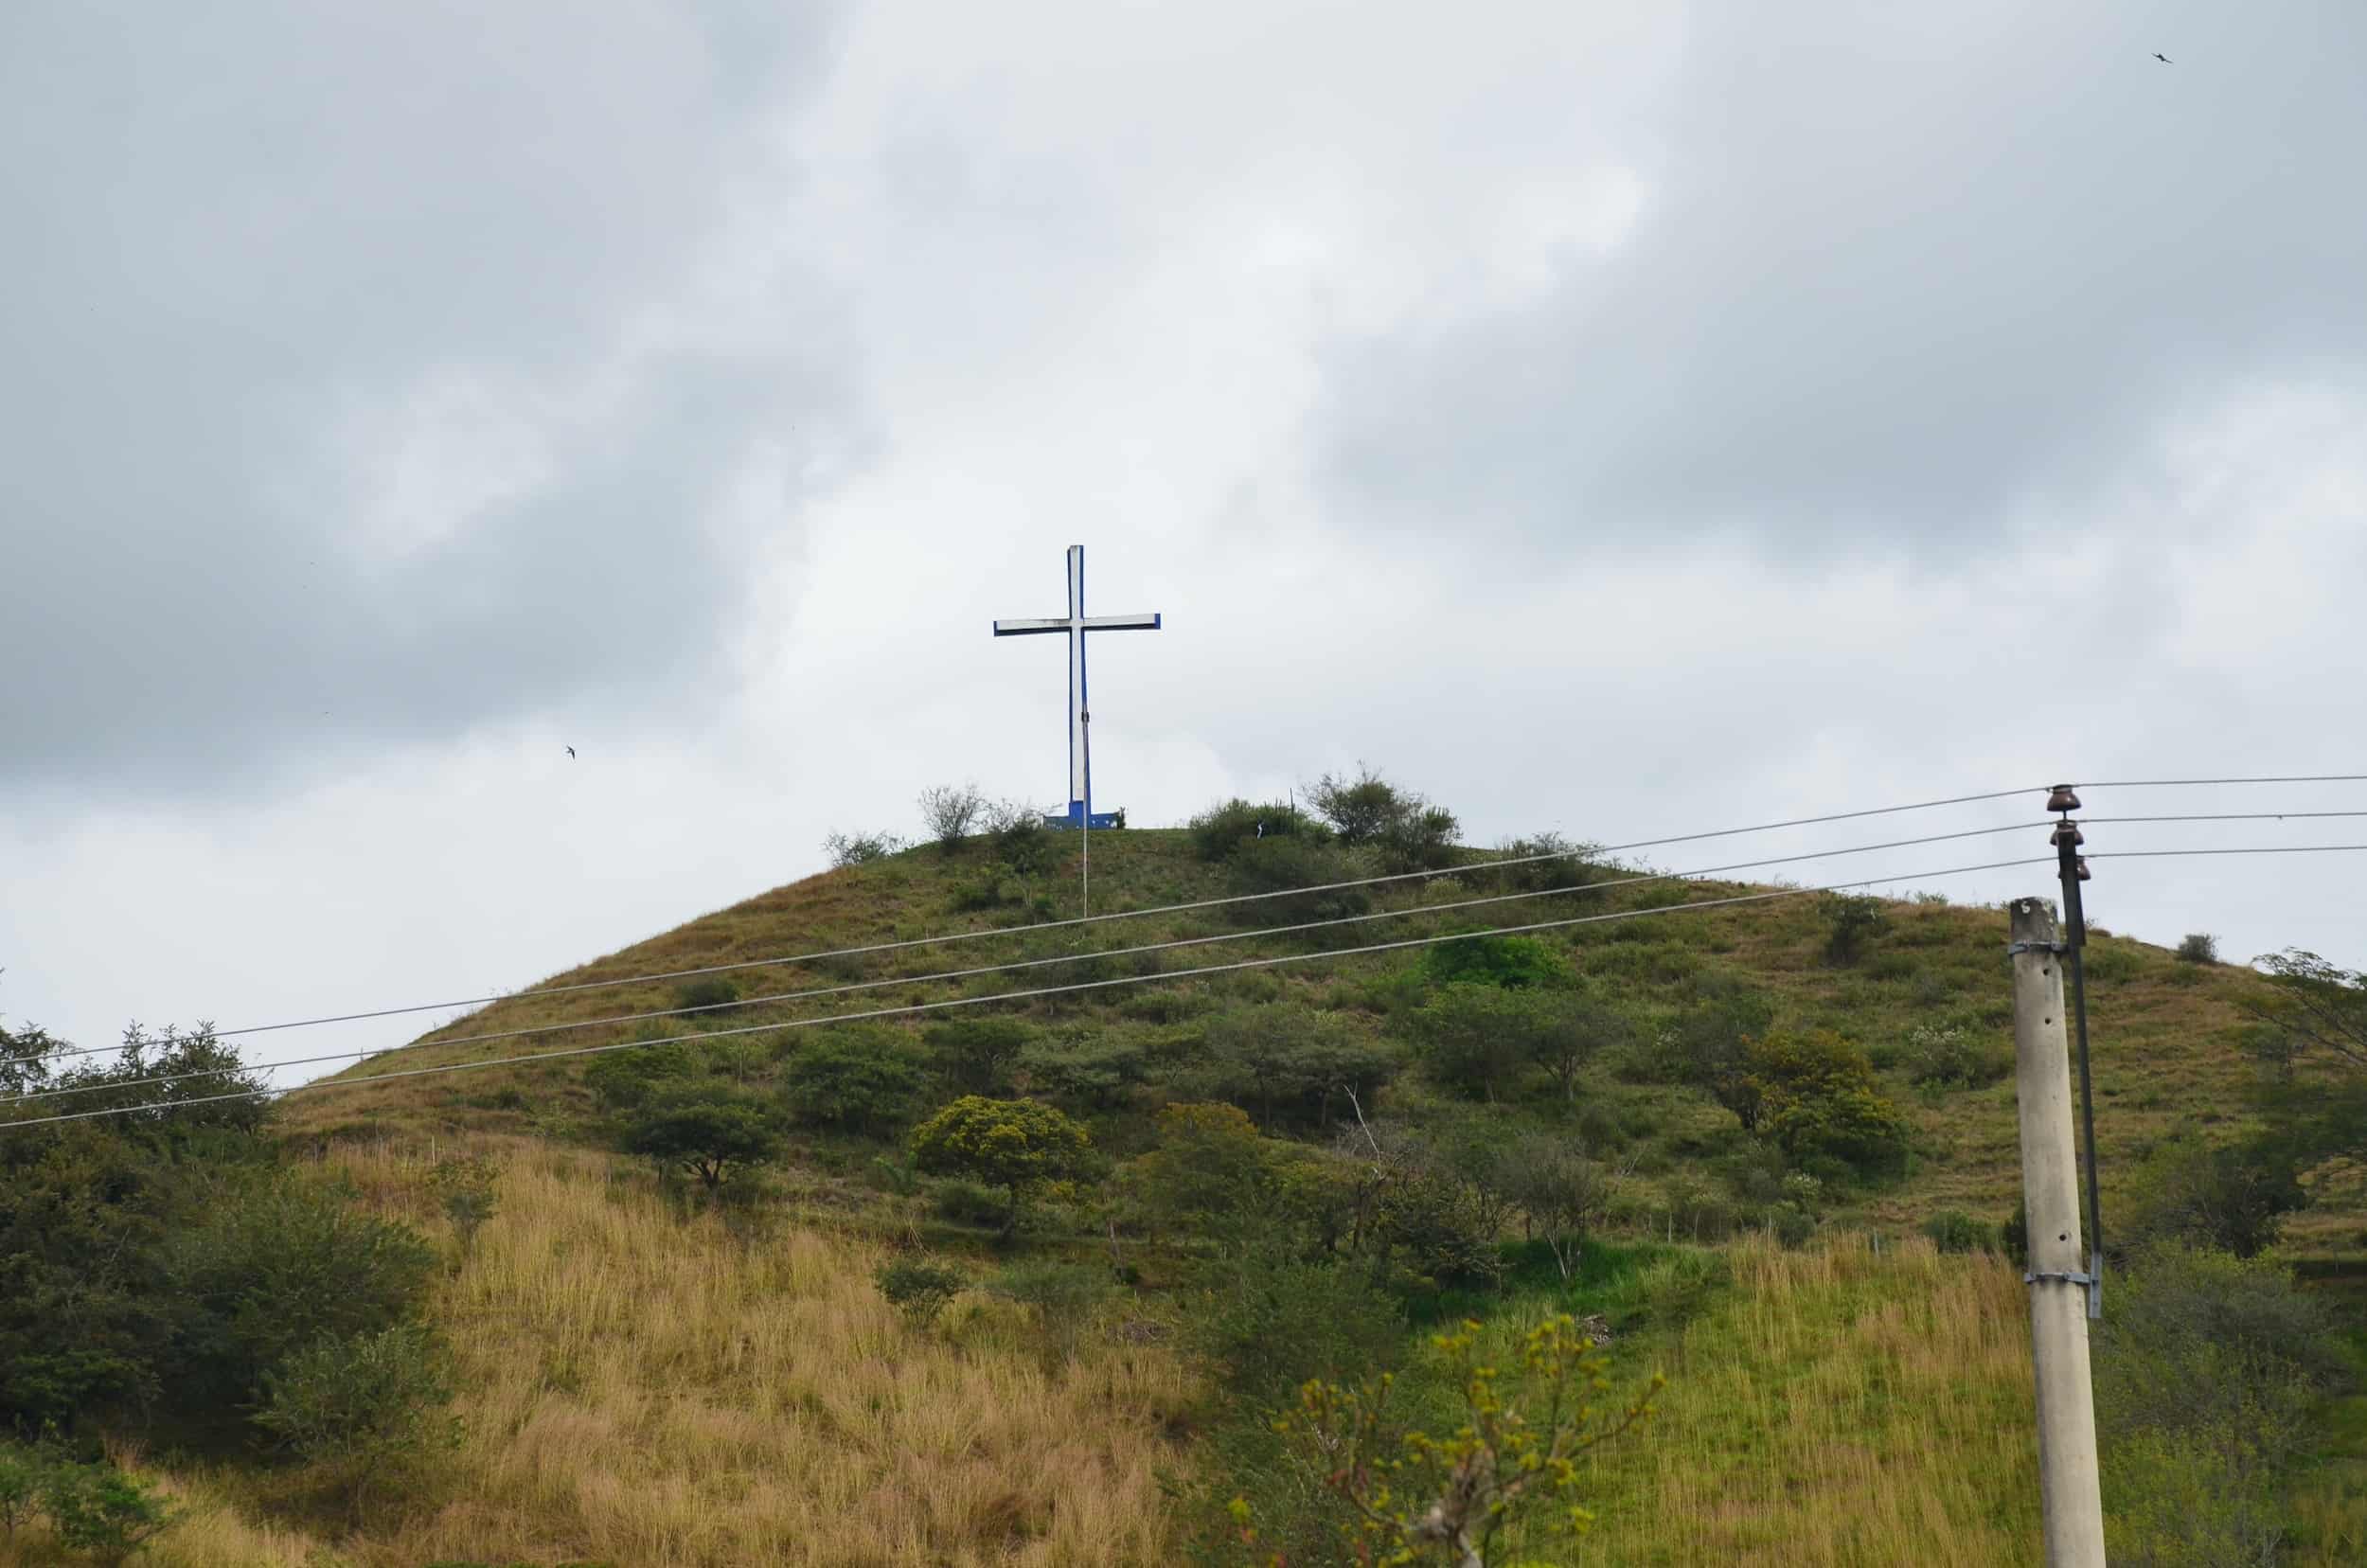 Mirador de la Cruz in Toro, Valle del Cauca, Colombia